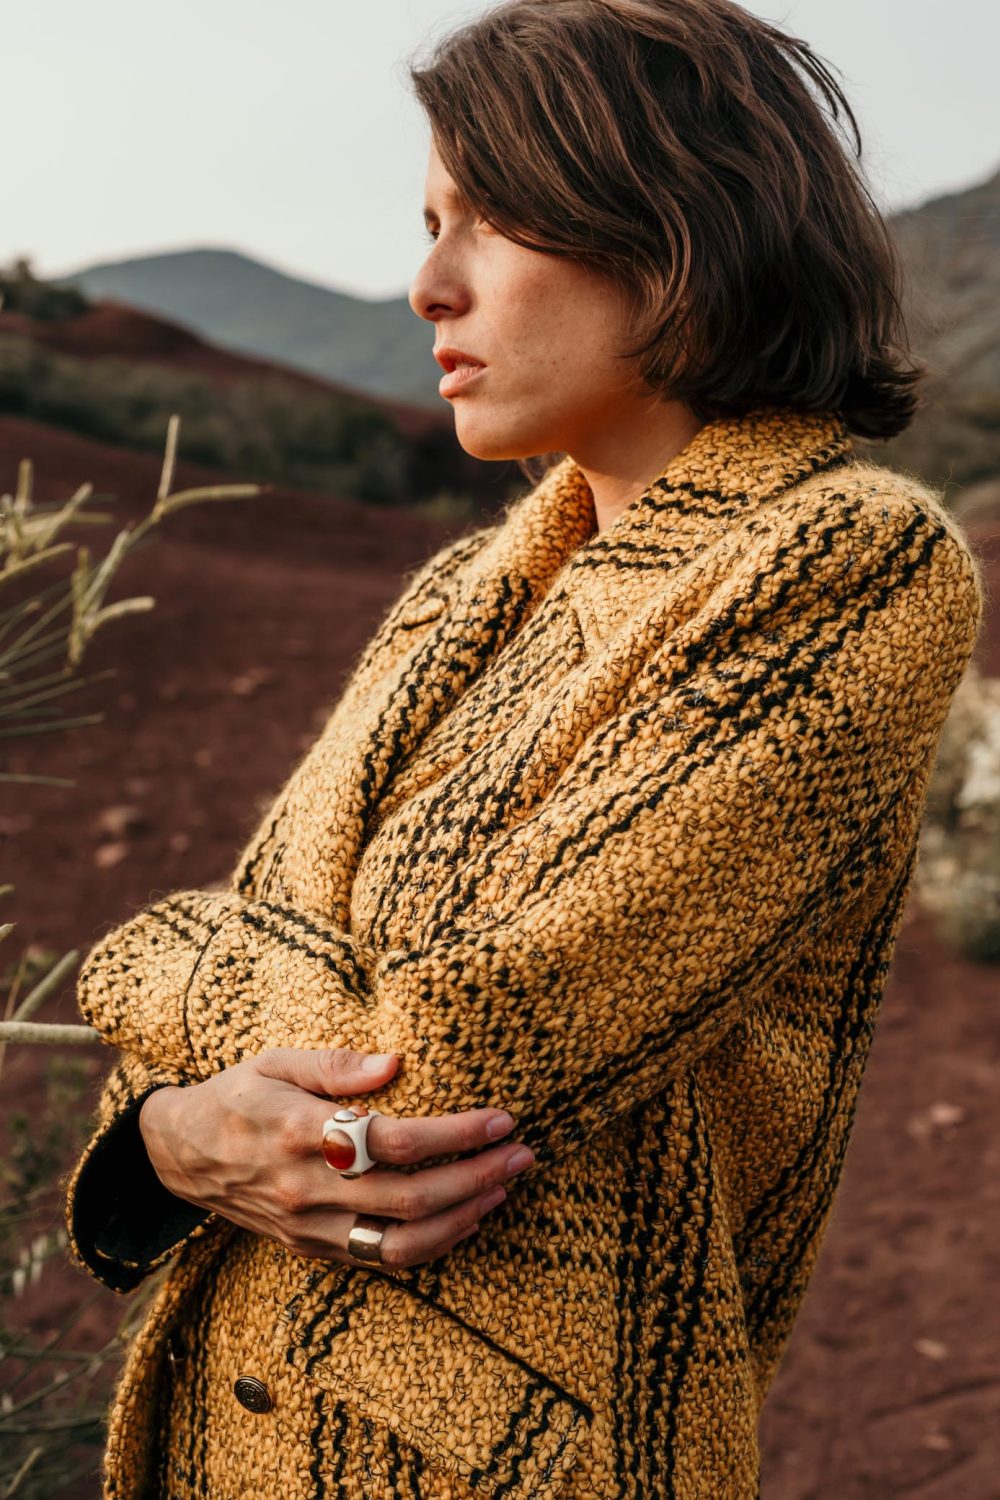 manteau femme made in France pour une mode éthique. réalisé dans un tissu laine qui le rend doux et chaud. Sa belle couleur jaune moutarde accompagnera vos nombreuses tenues.